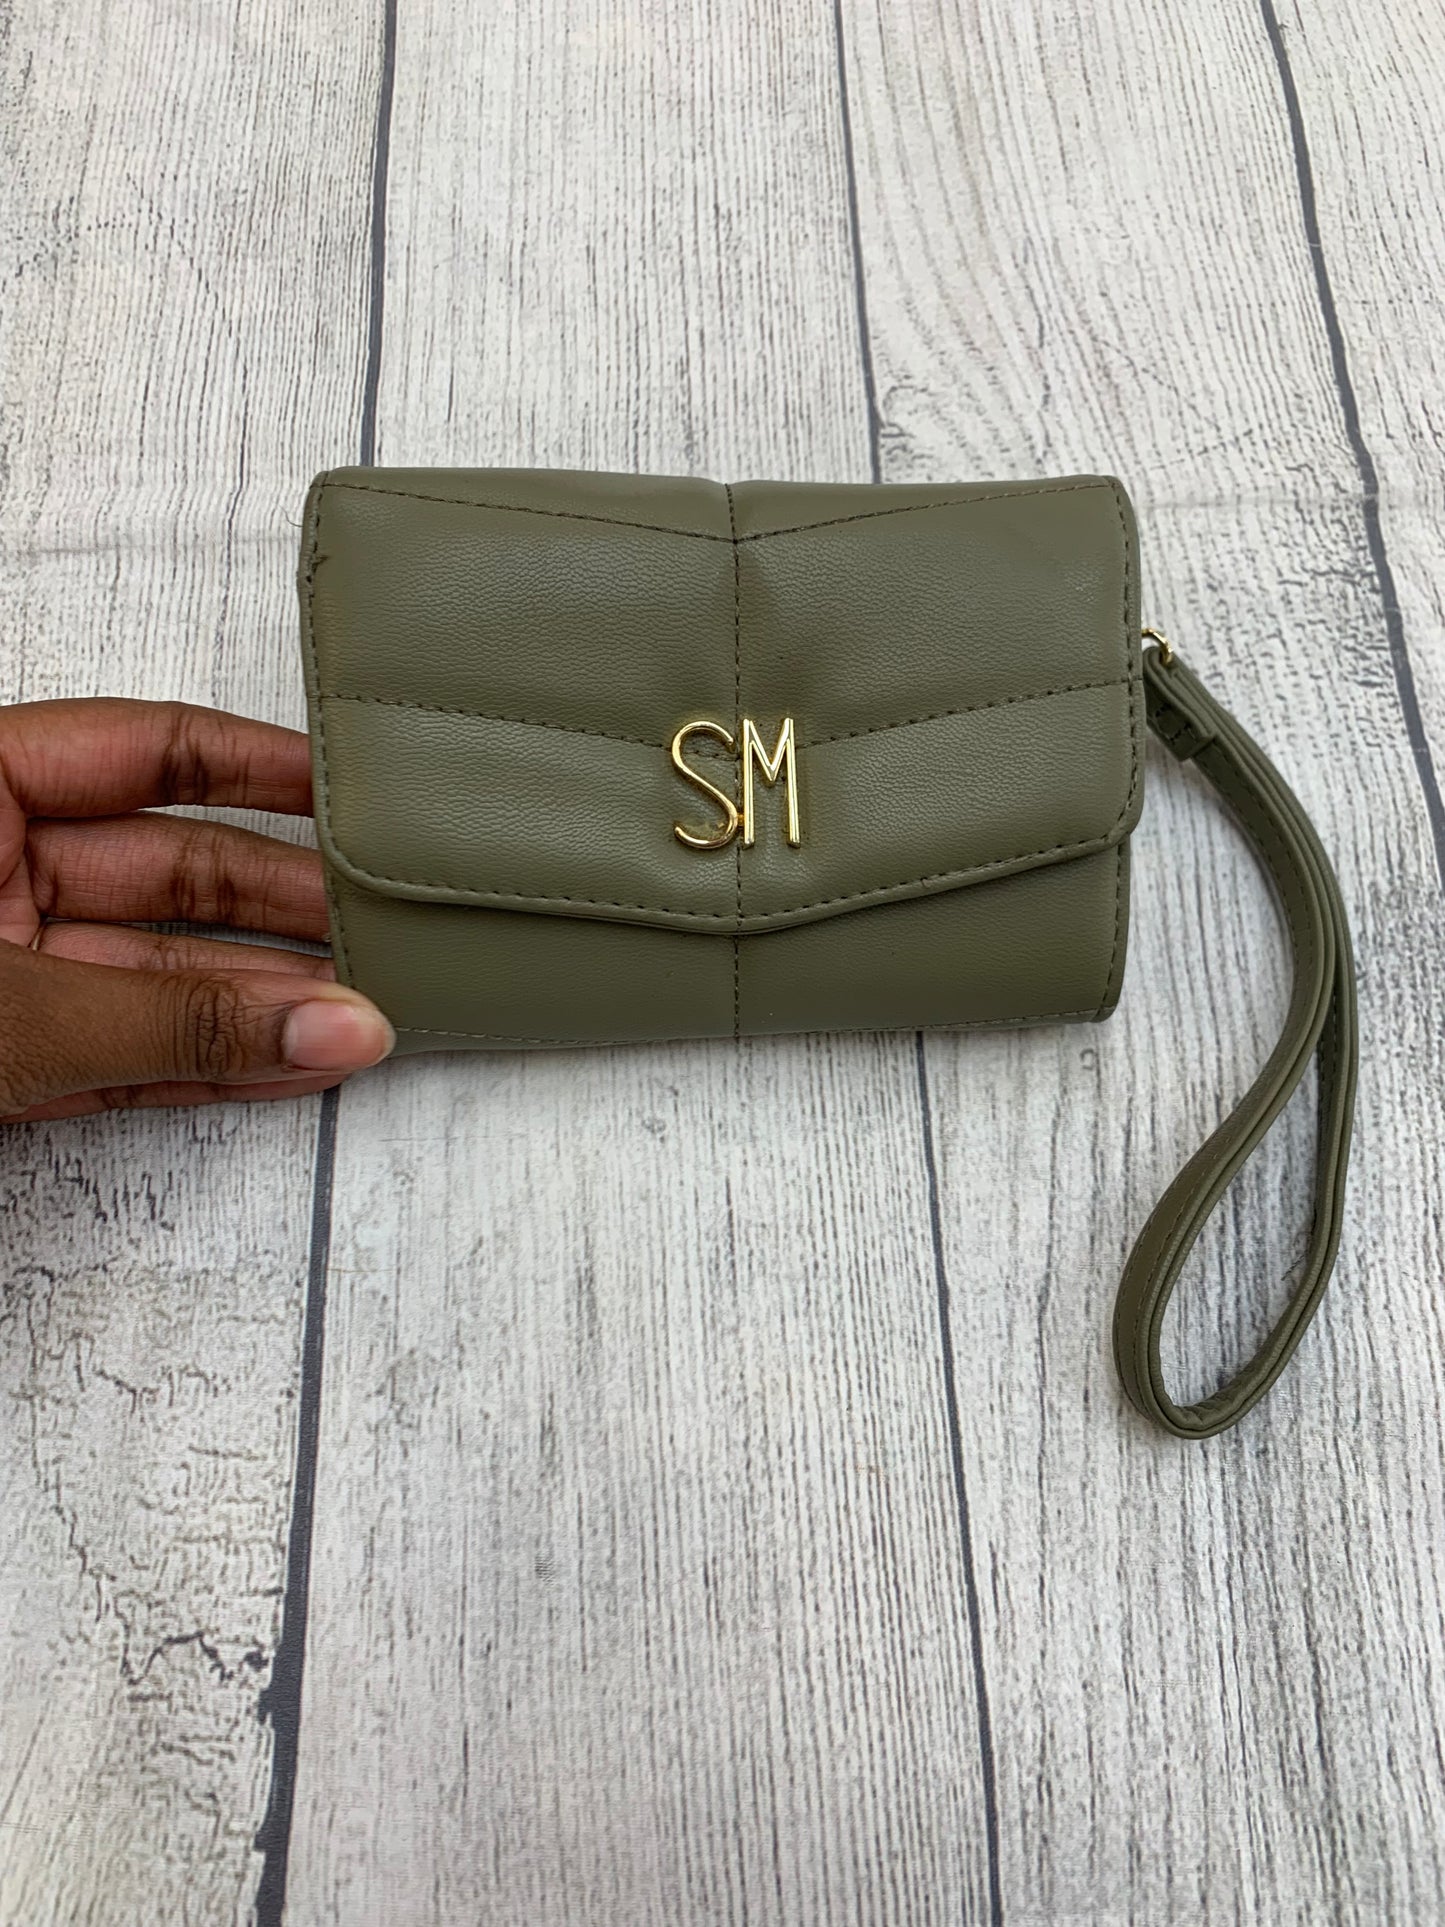 Wallet By Steve Madden  Size: Medium